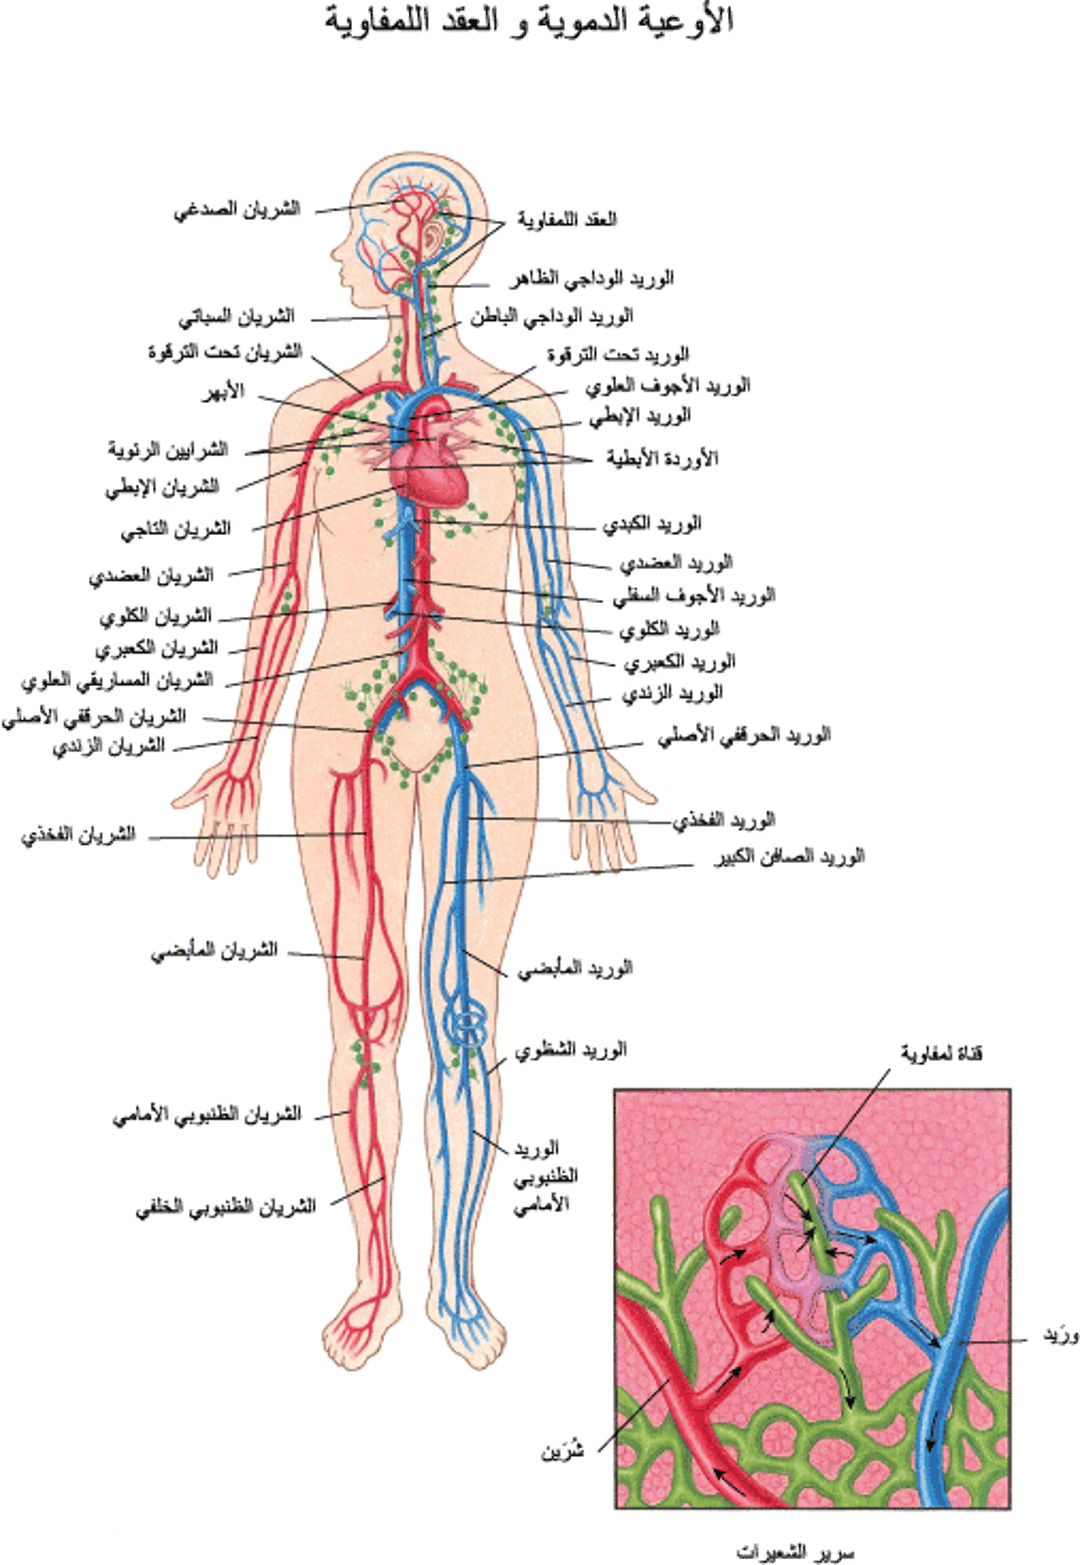 الأوعية الدموية والعُقد اللمفية